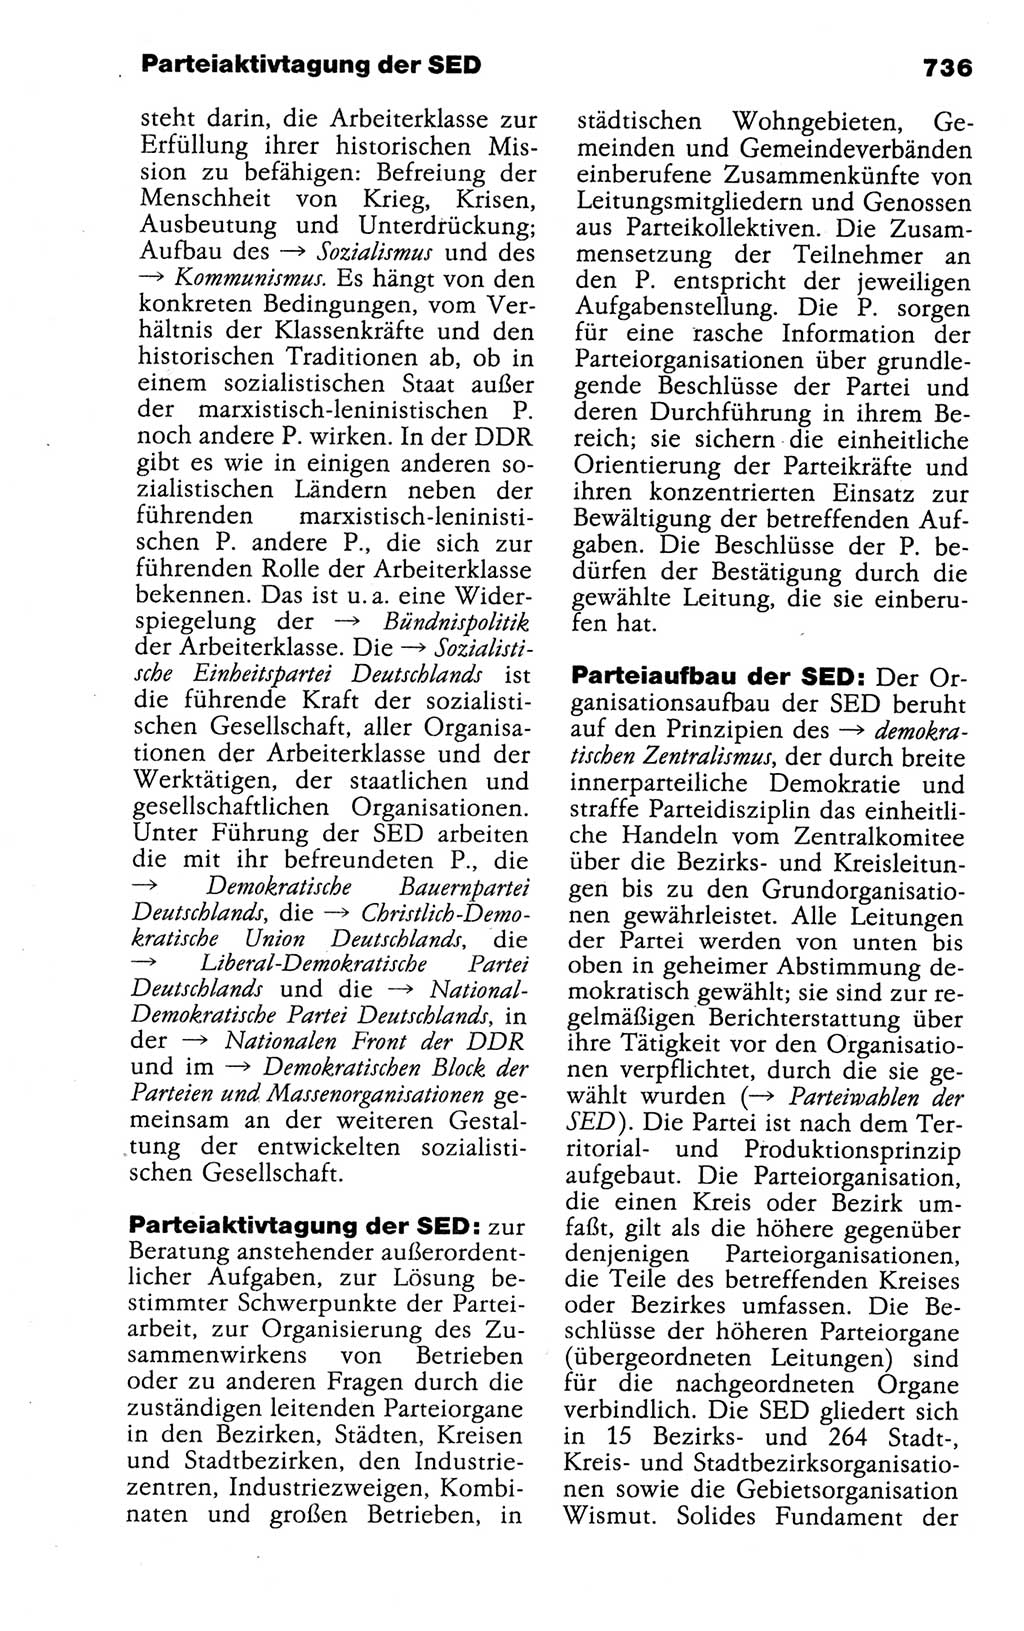 Kleines politisches Wörterbuch [Deutsche Demokratische Republik (DDR)] 1988, Seite 736 (Kl. pol. Wb. DDR 1988, S. 736)